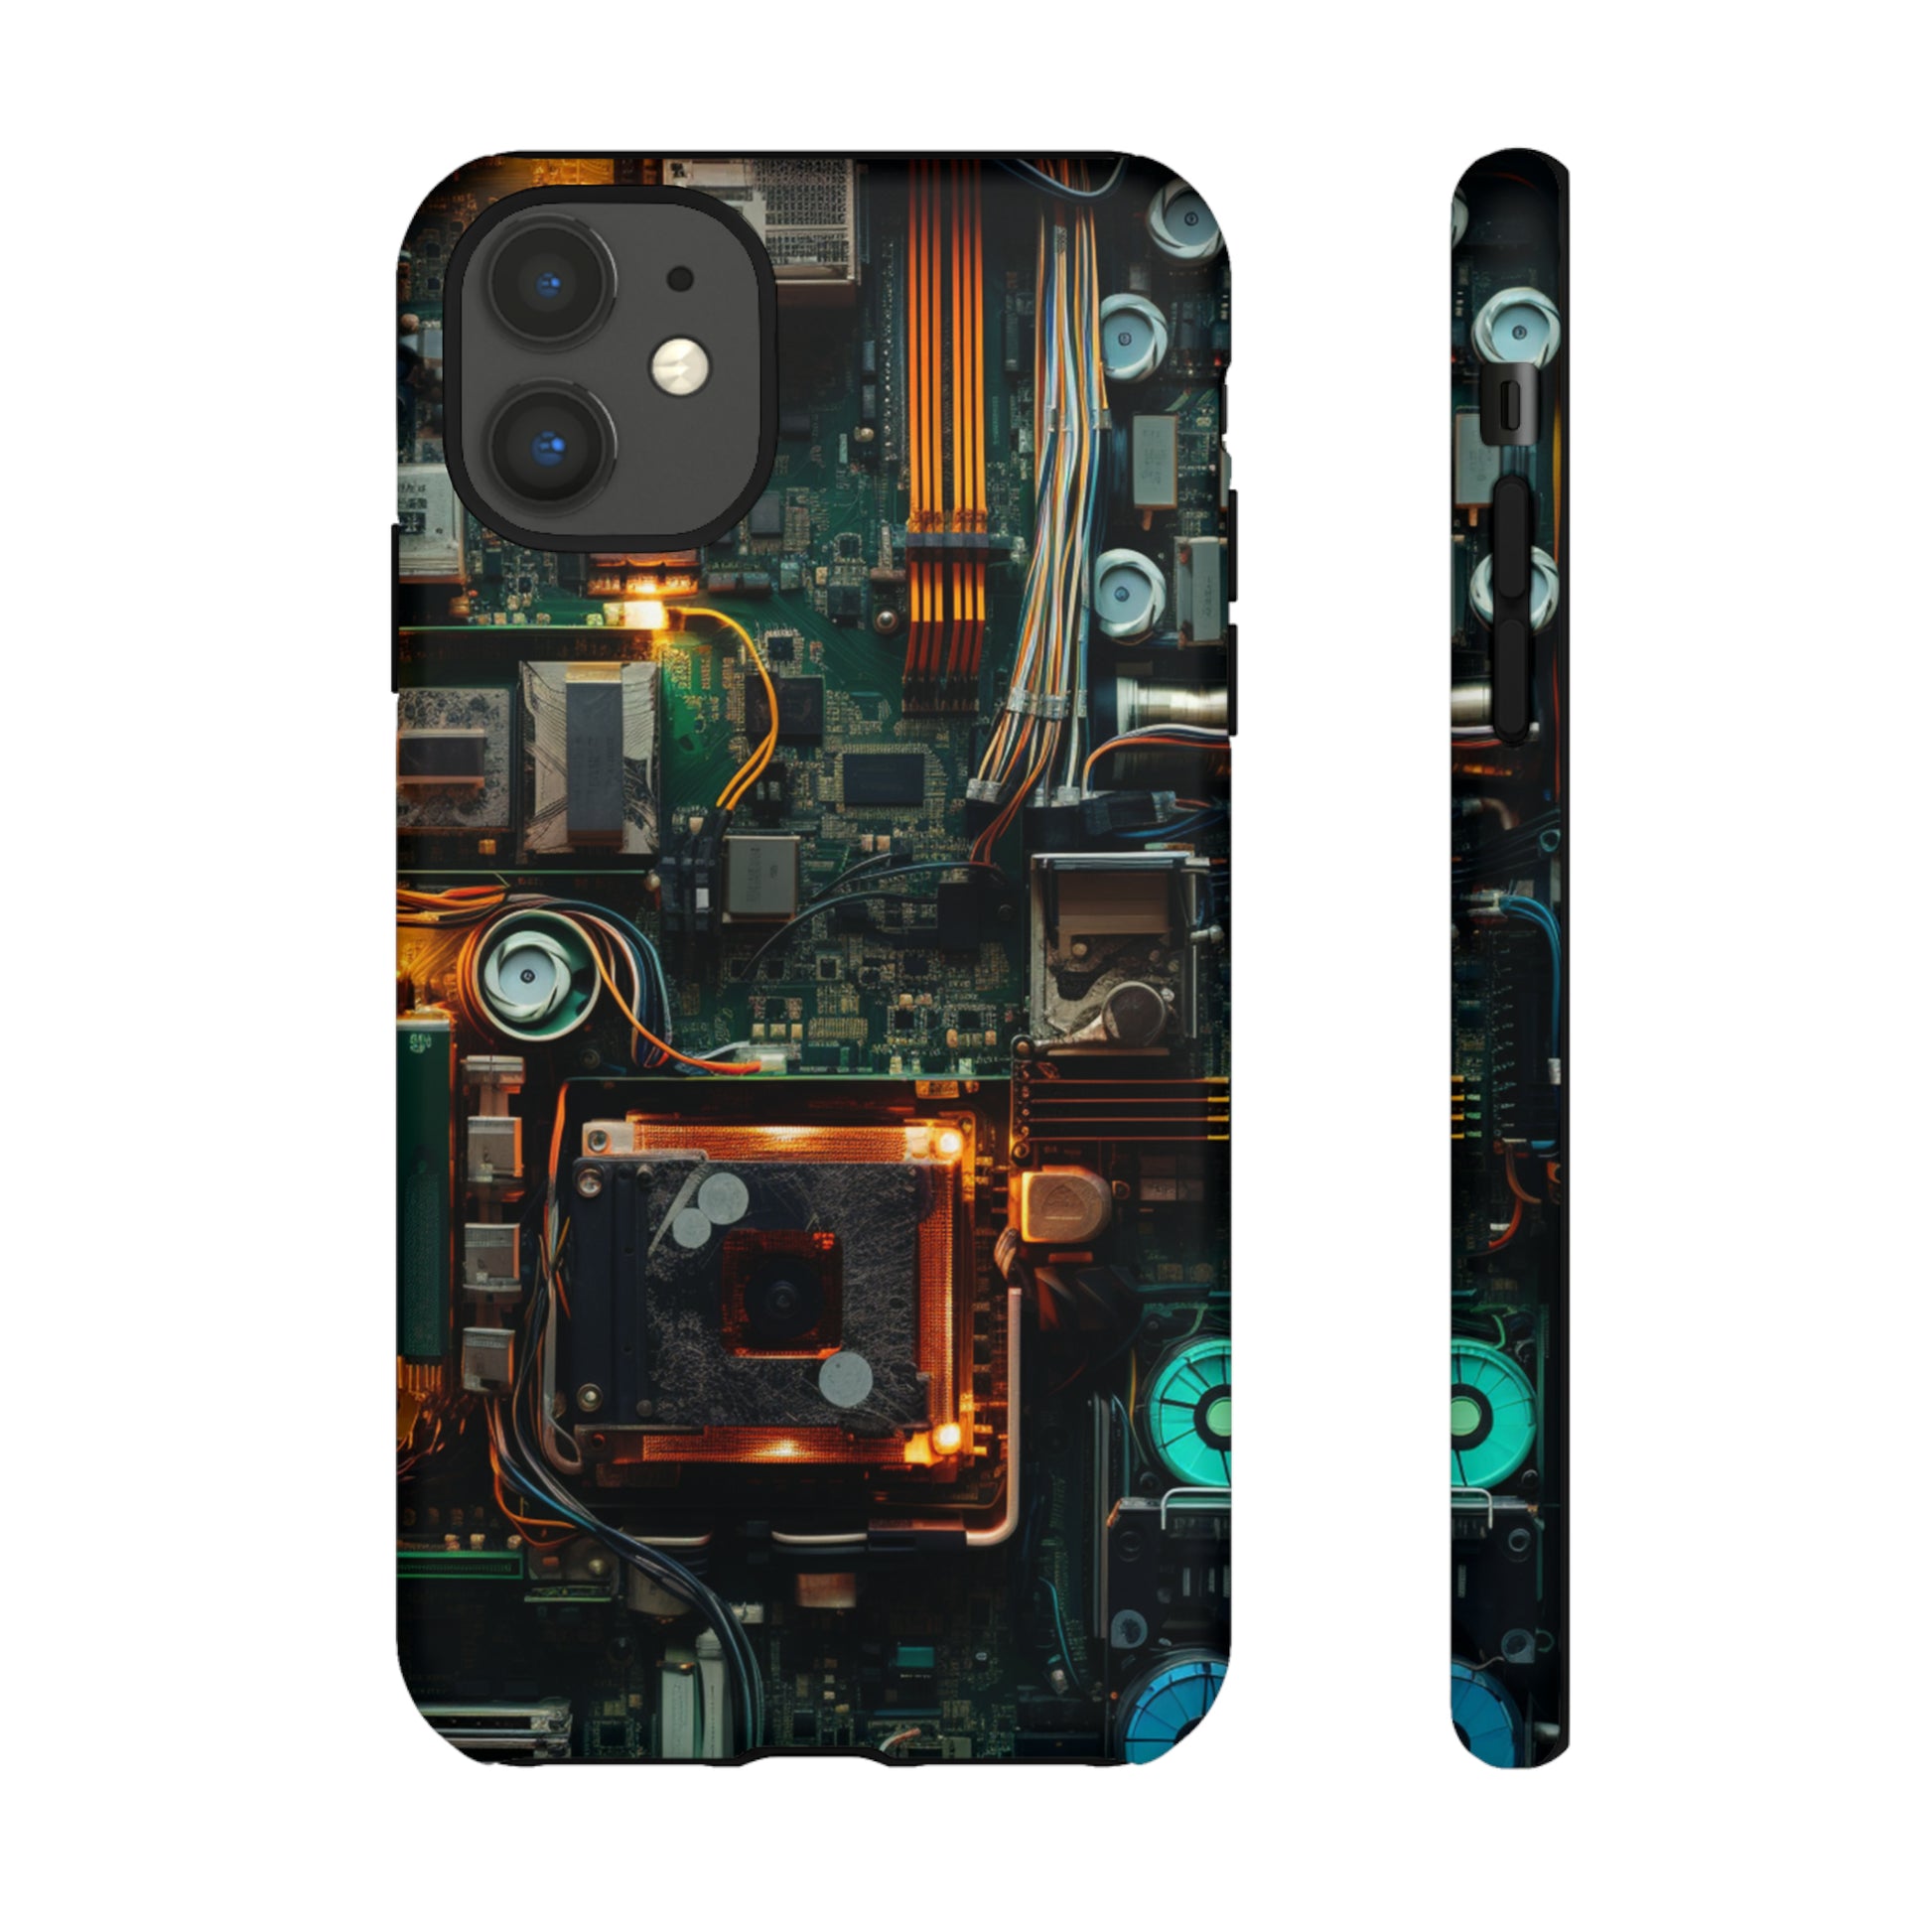 Unique open circuit design on iPhone 11 Pro Max case